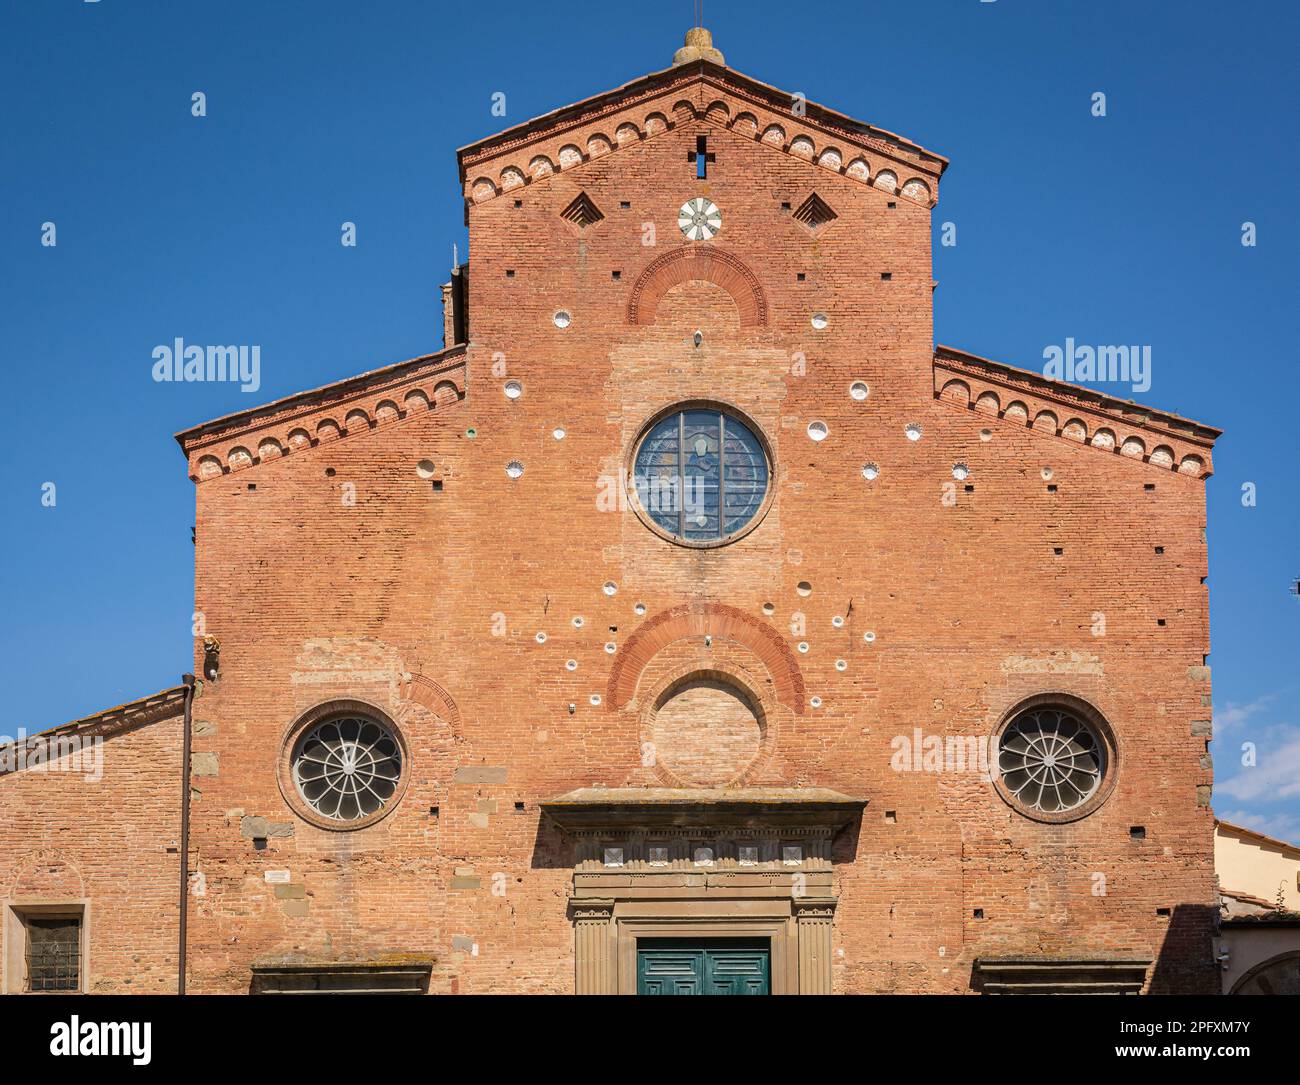 Fachada de la Catedral de Santa Maria Assunta y San Genesio martire, construido en el siglo 12th, San Miniato, región de la toscana, Italia Foto de stock